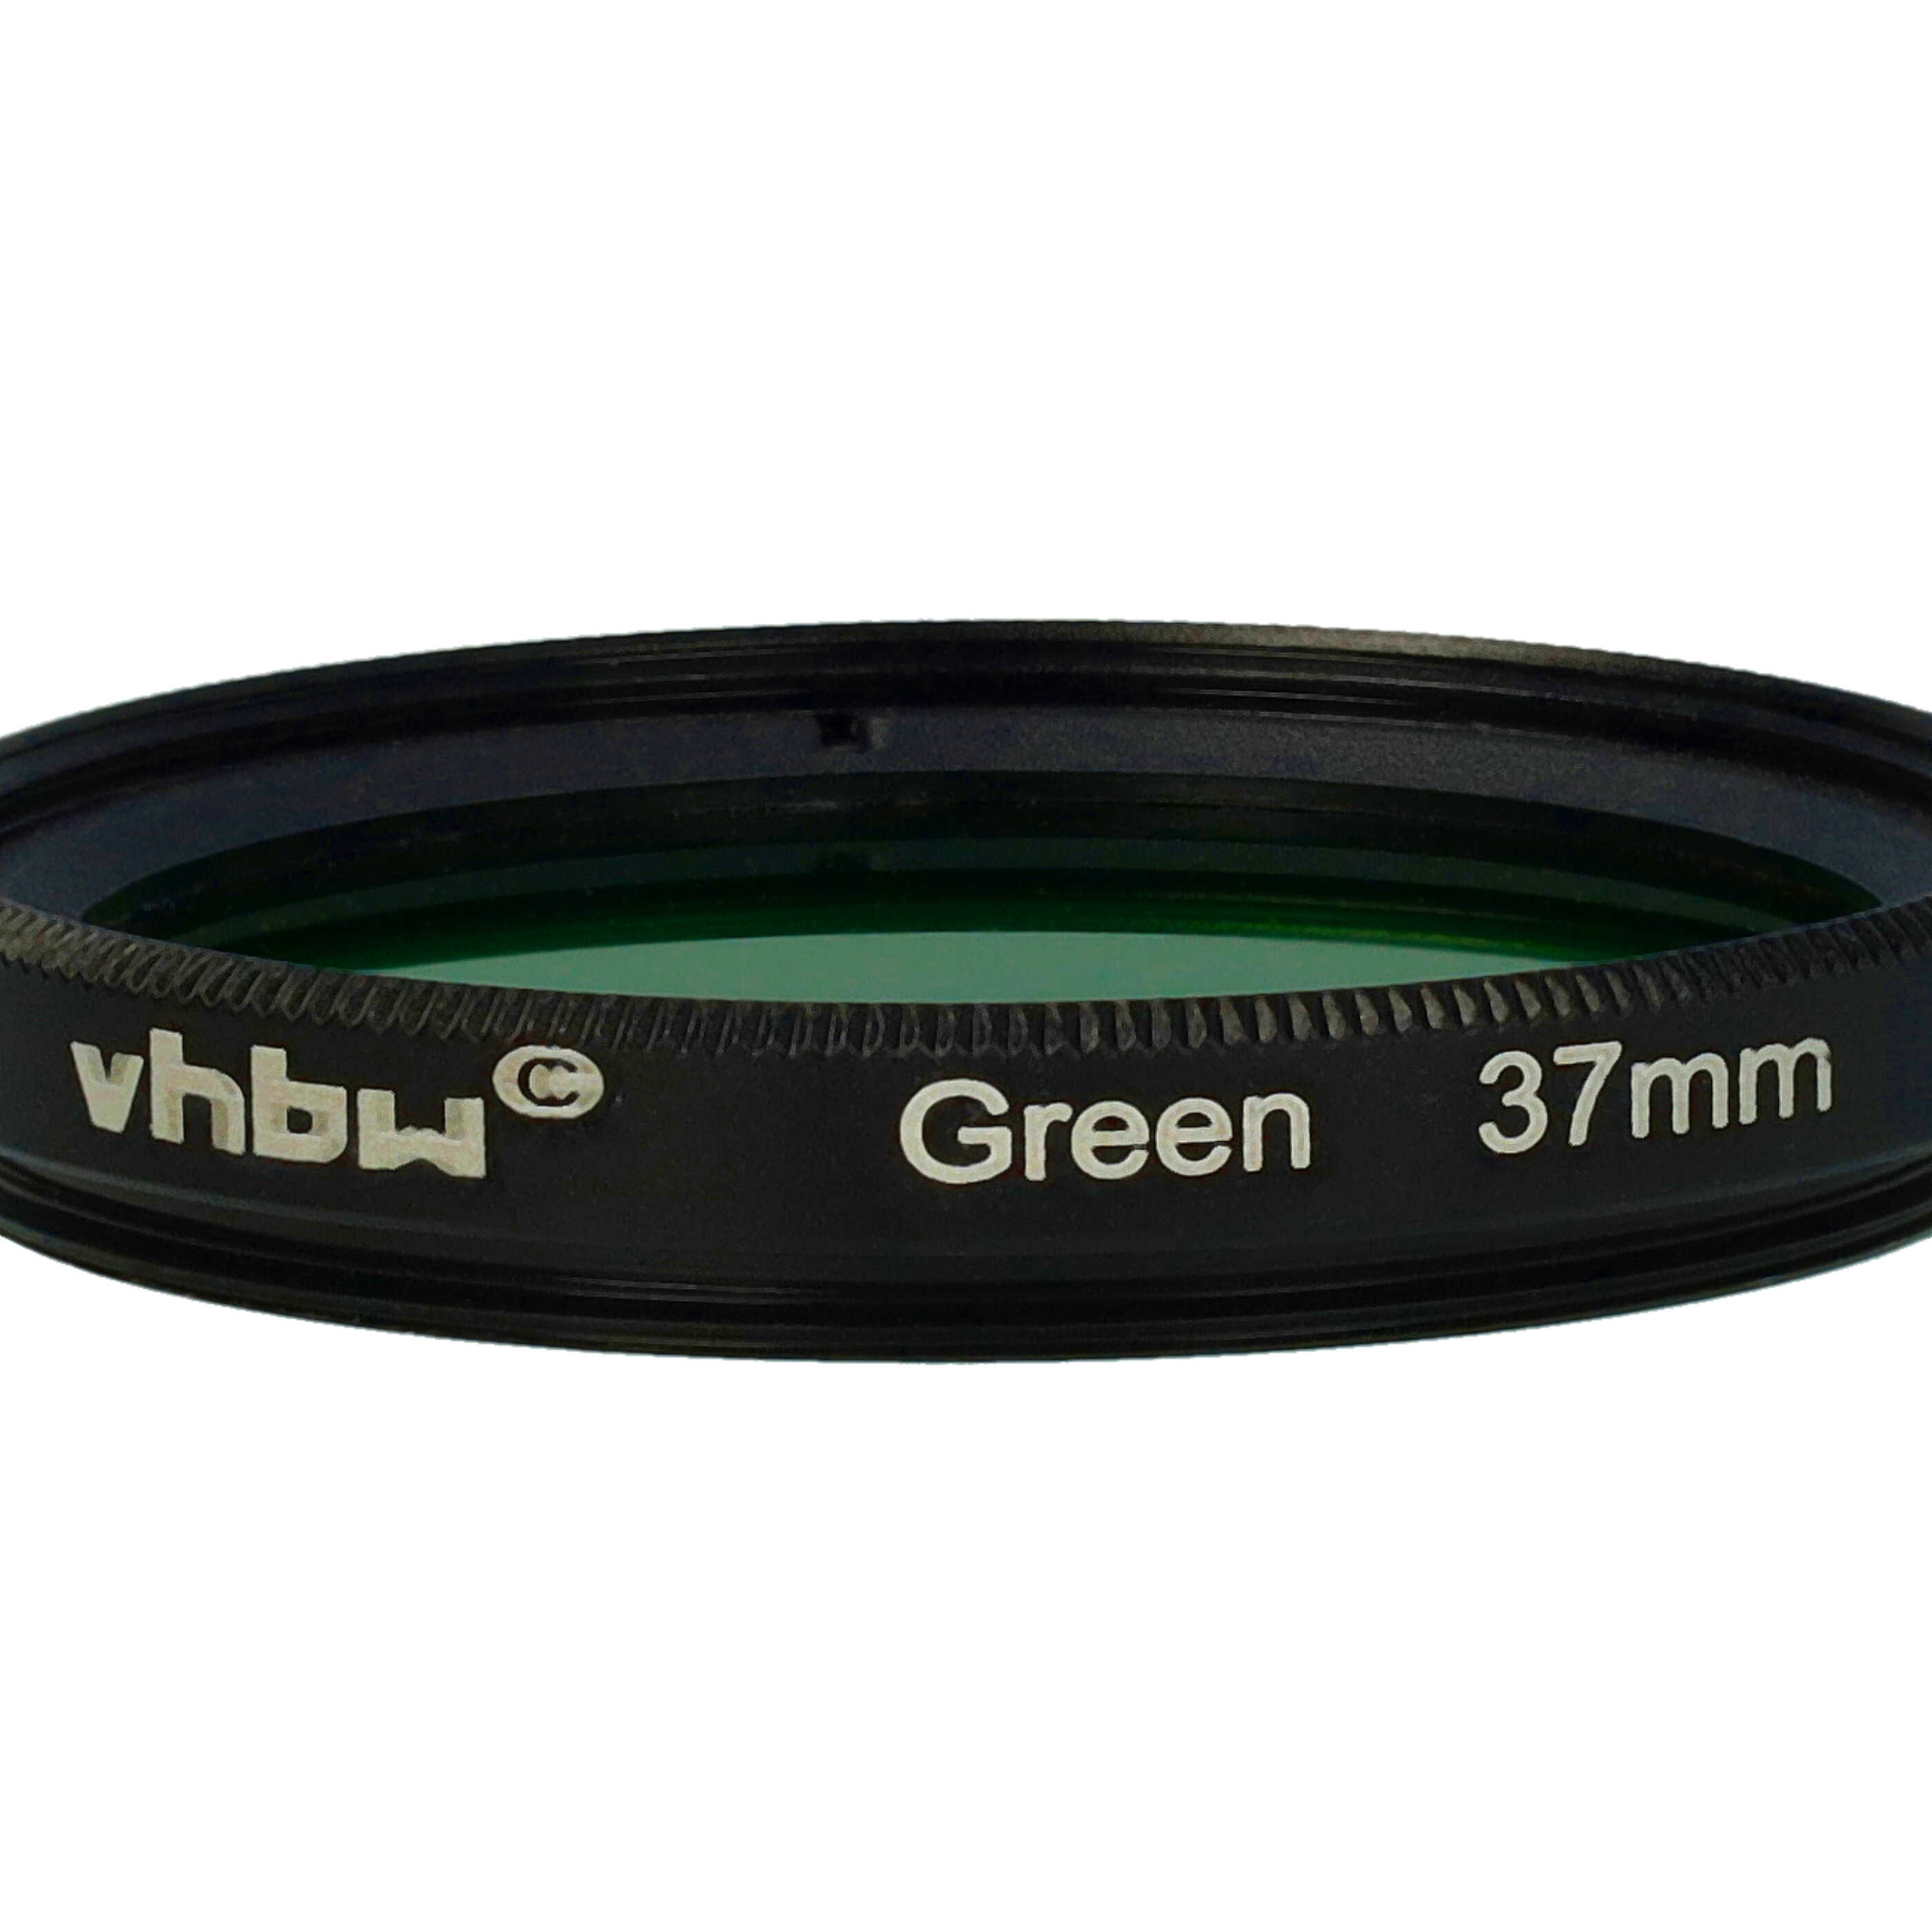 Filtre de couleur vert pour objectifs d'appareils photo de 37 mm - Filtre vert